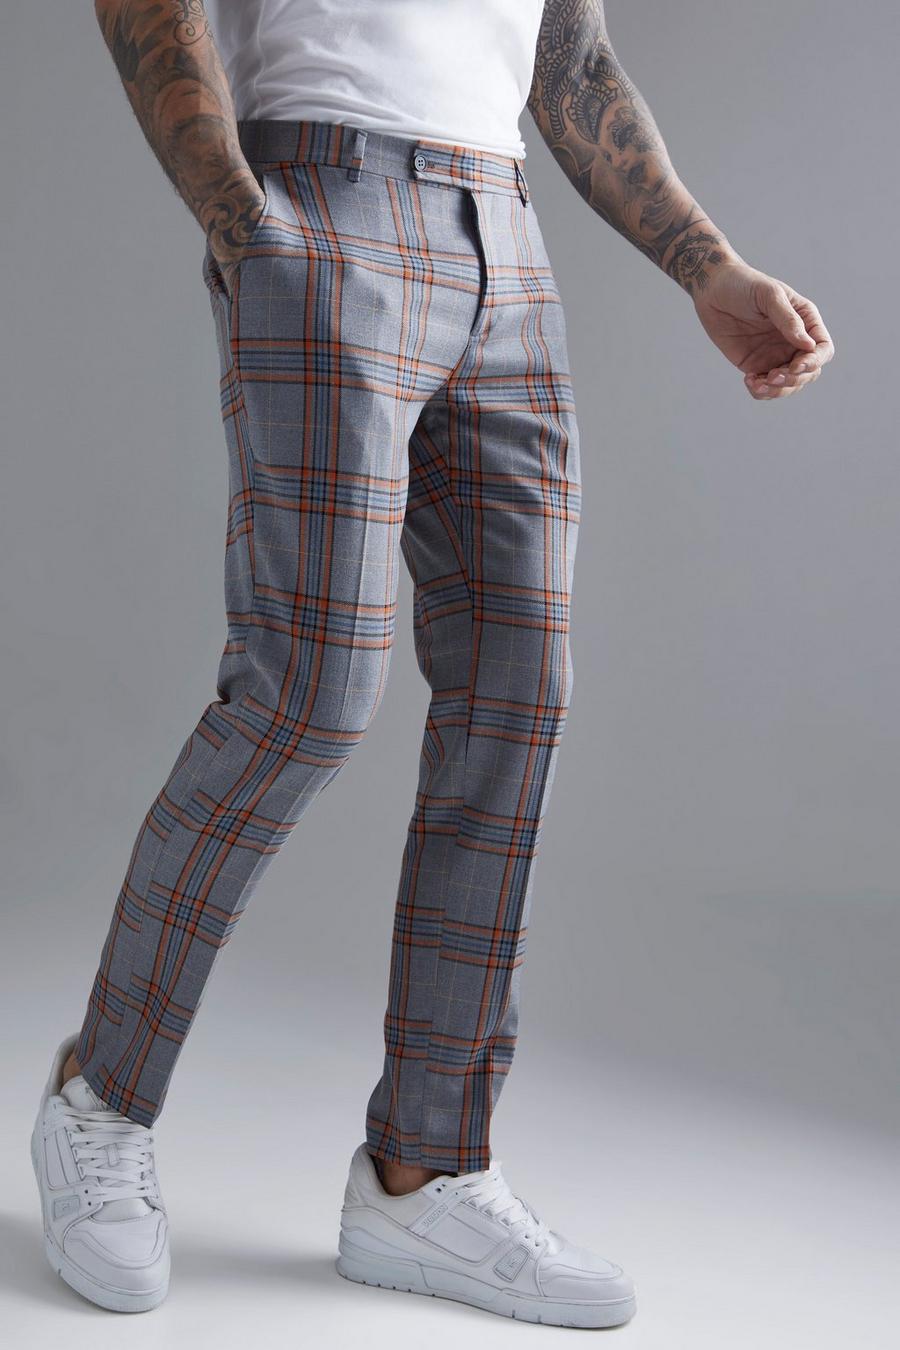 Pantaloni completo Slim Fit a quadri in colori fluo, Grey grigio